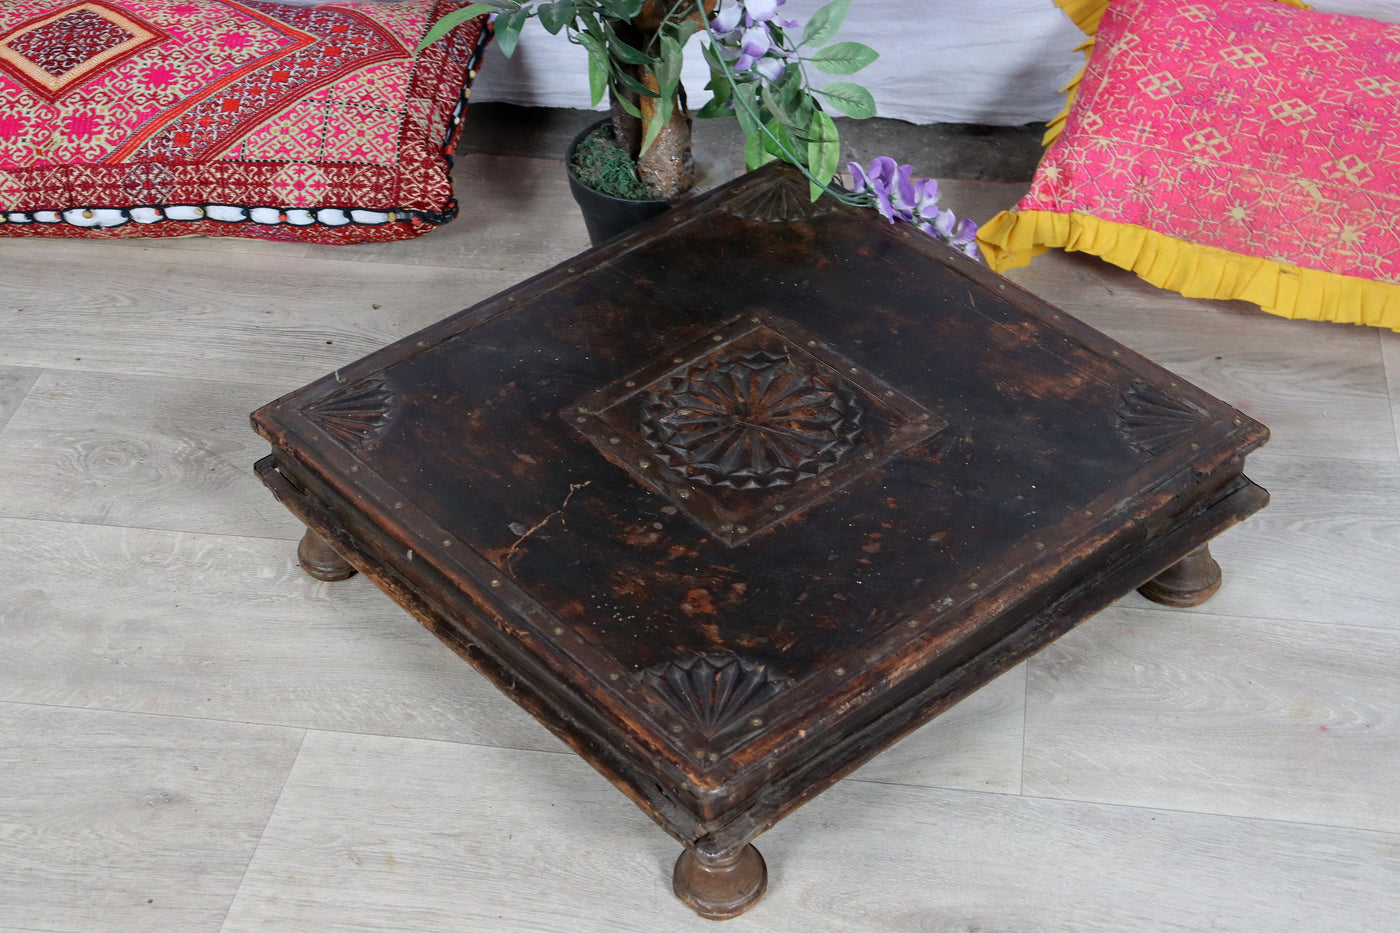 54x54 cm antik Kleine antik Massiv holz handgeschnitze Teetisch Tisch beistelltisch Hocker  Swat-tal Pakistan  Orientsbazar   